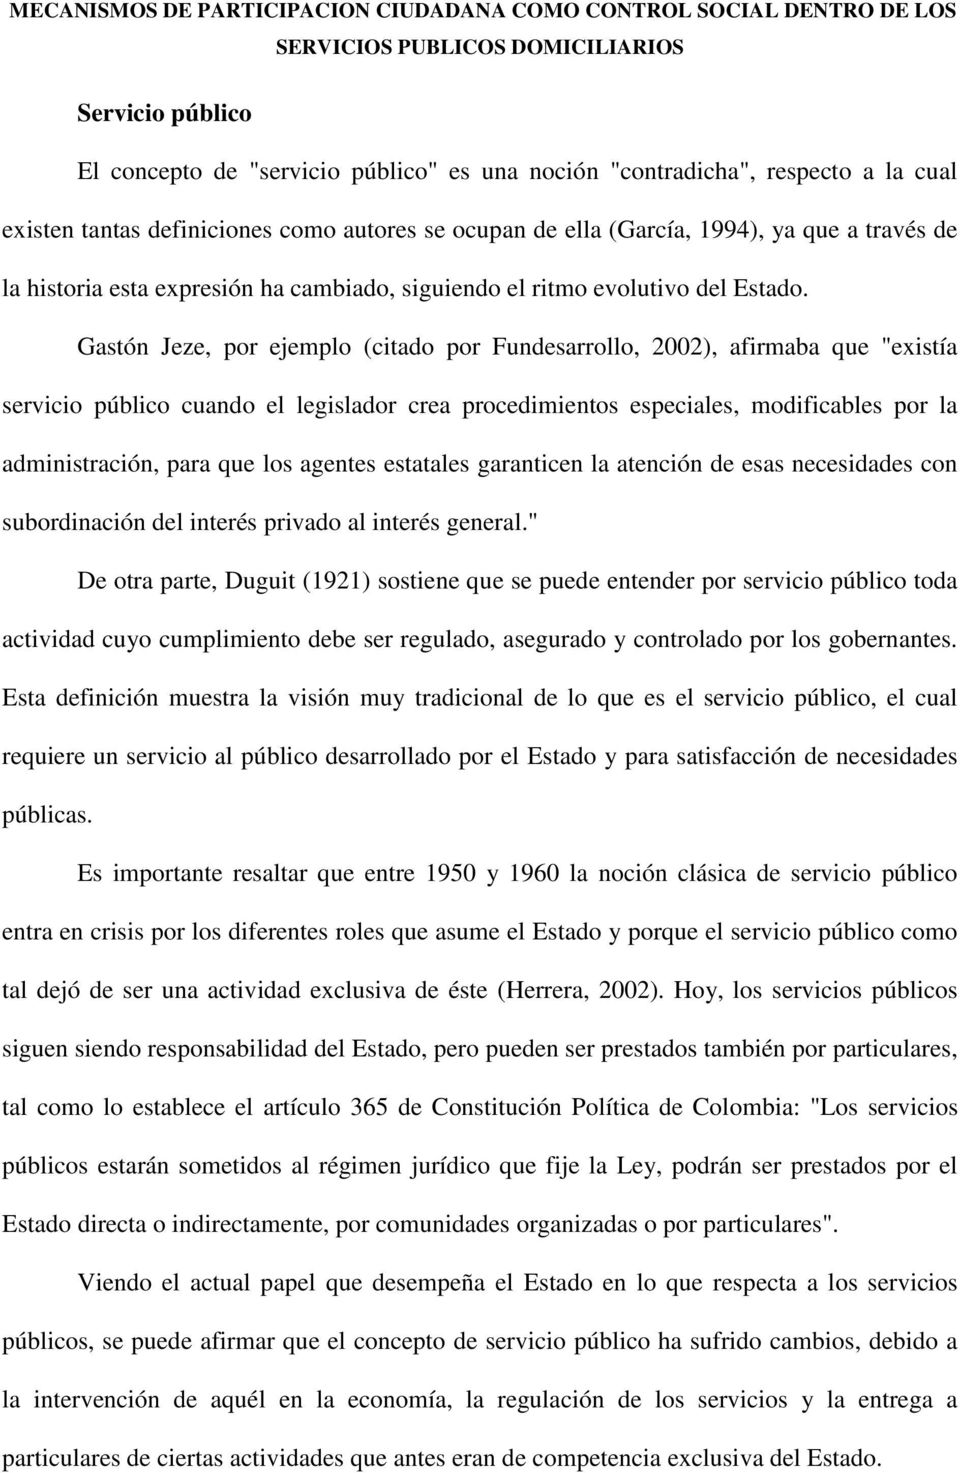 Gastón Jeze, por ejemplo (citado por Fundesarrollo, 2002), afirmaba que "existía servicio público cuando el legislador crea procedimientos especiales, modificables por la administración, para que los